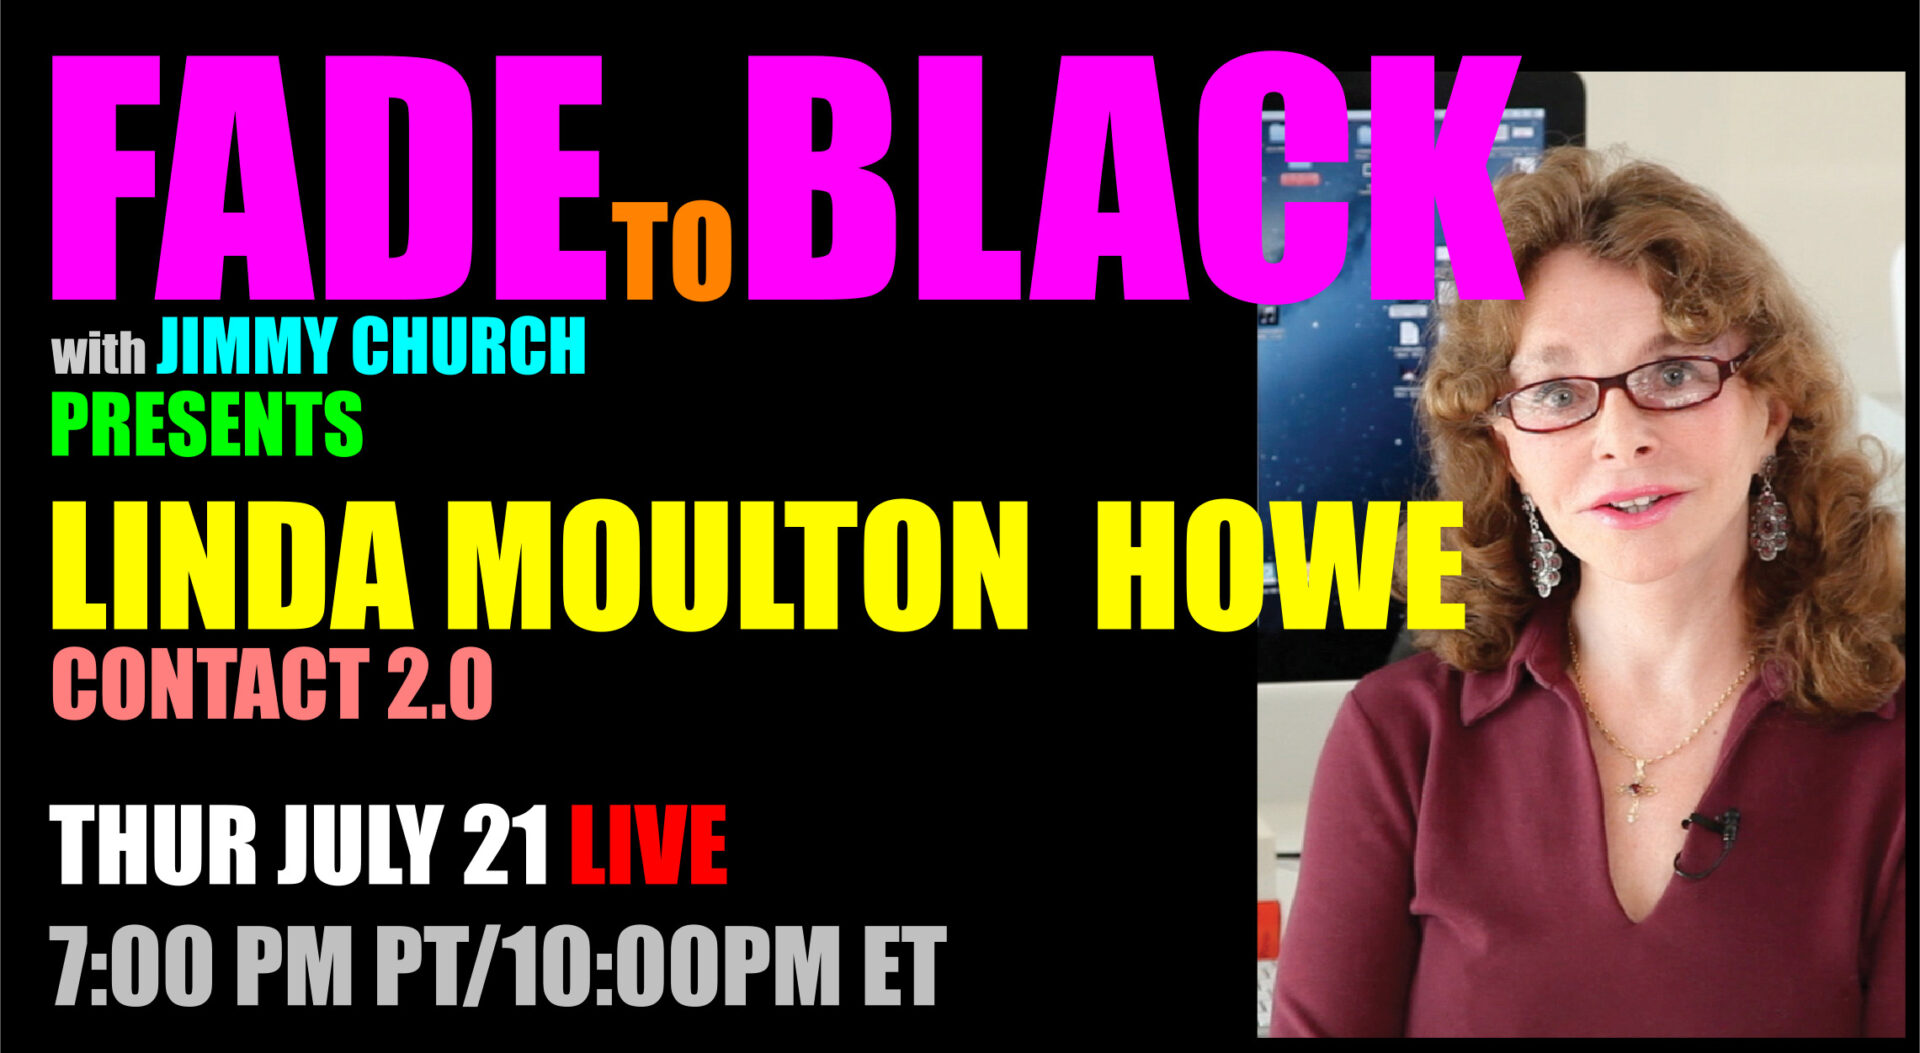 Fade To Black - Linda Moulton Howe - July 21st